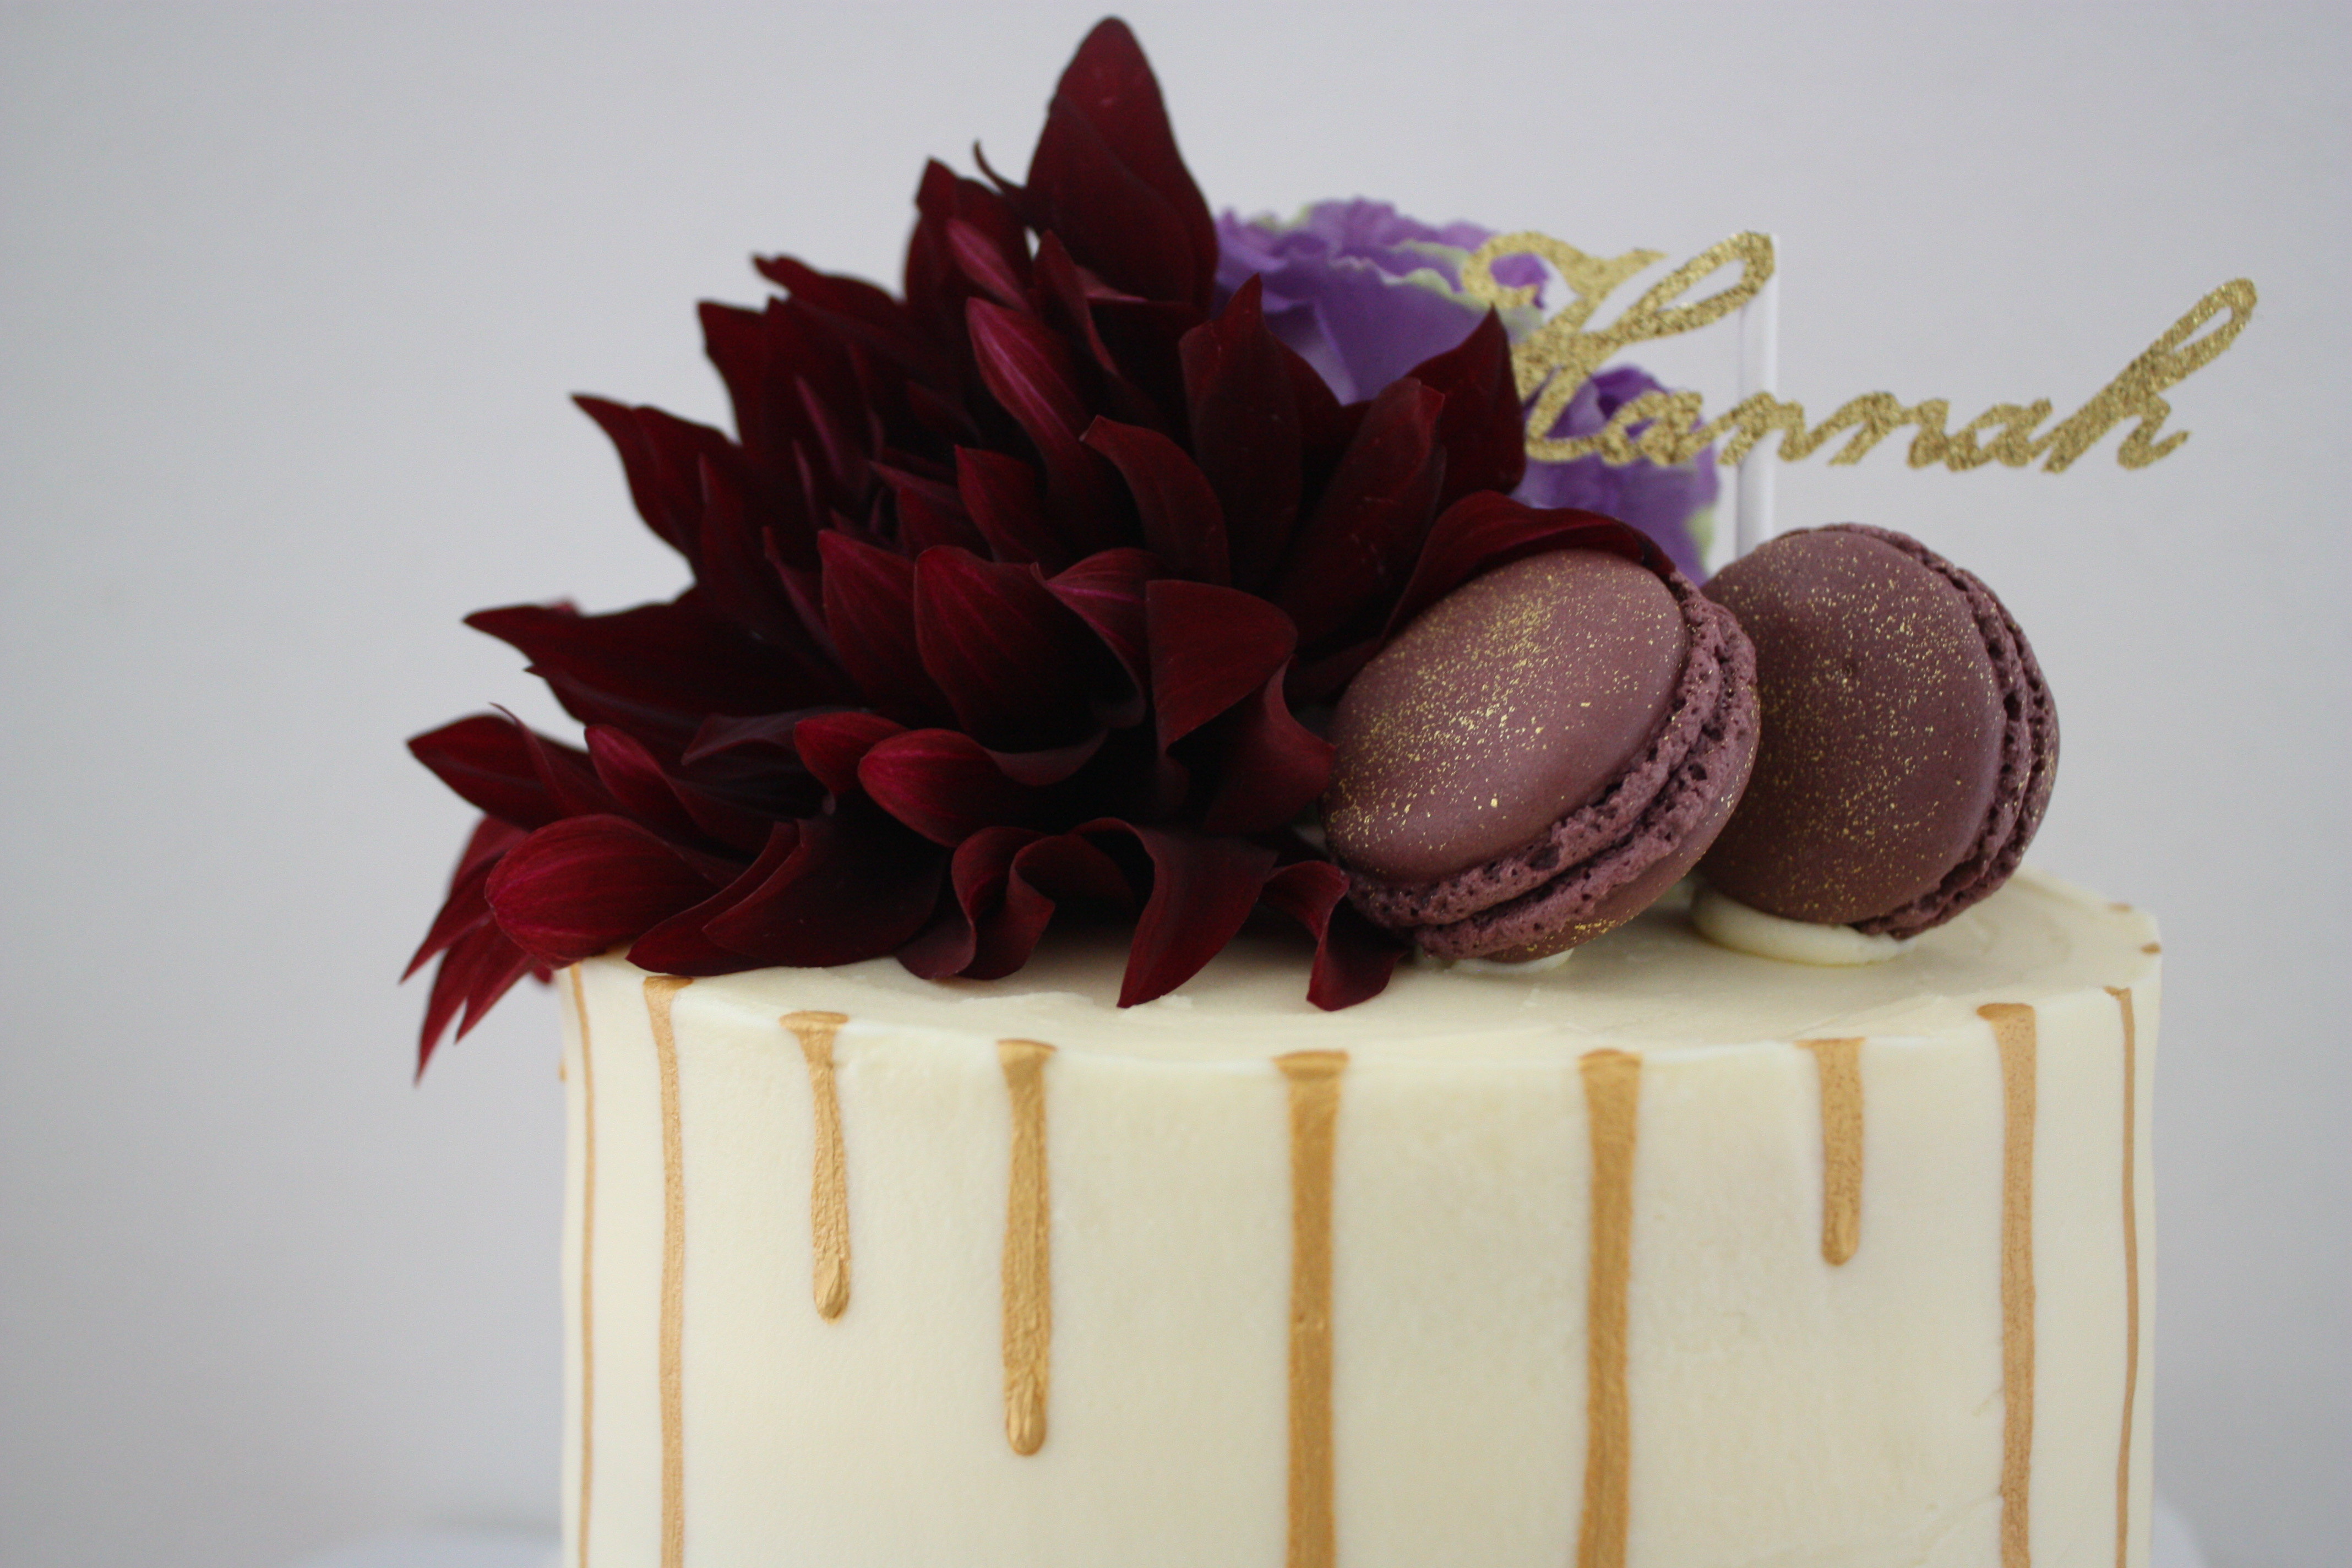 女性を夢中にさせる バースデーケーキ パリ風 ママスタイル Blog Madame Figaro Jp フィガロジャポン